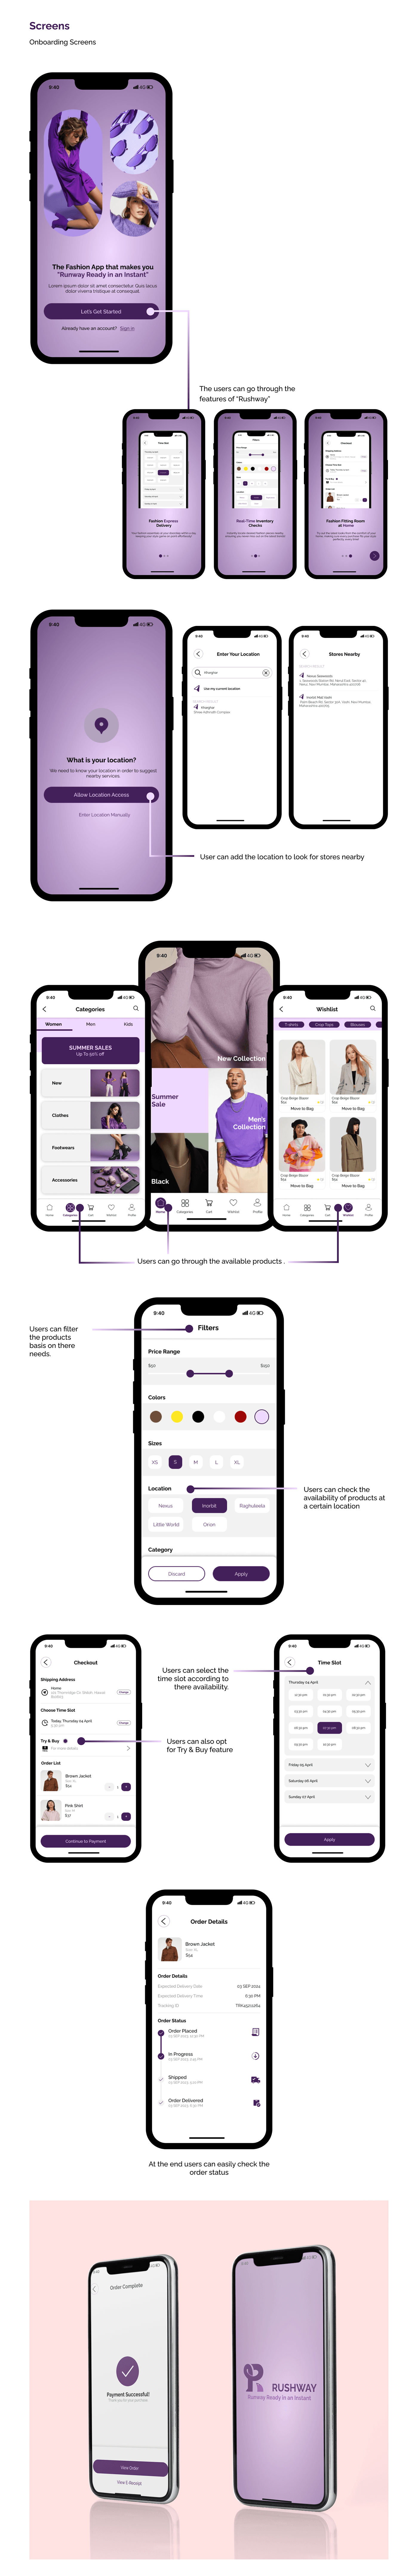 e-commerce app app design UI/UX user interface Mobile app shopping app